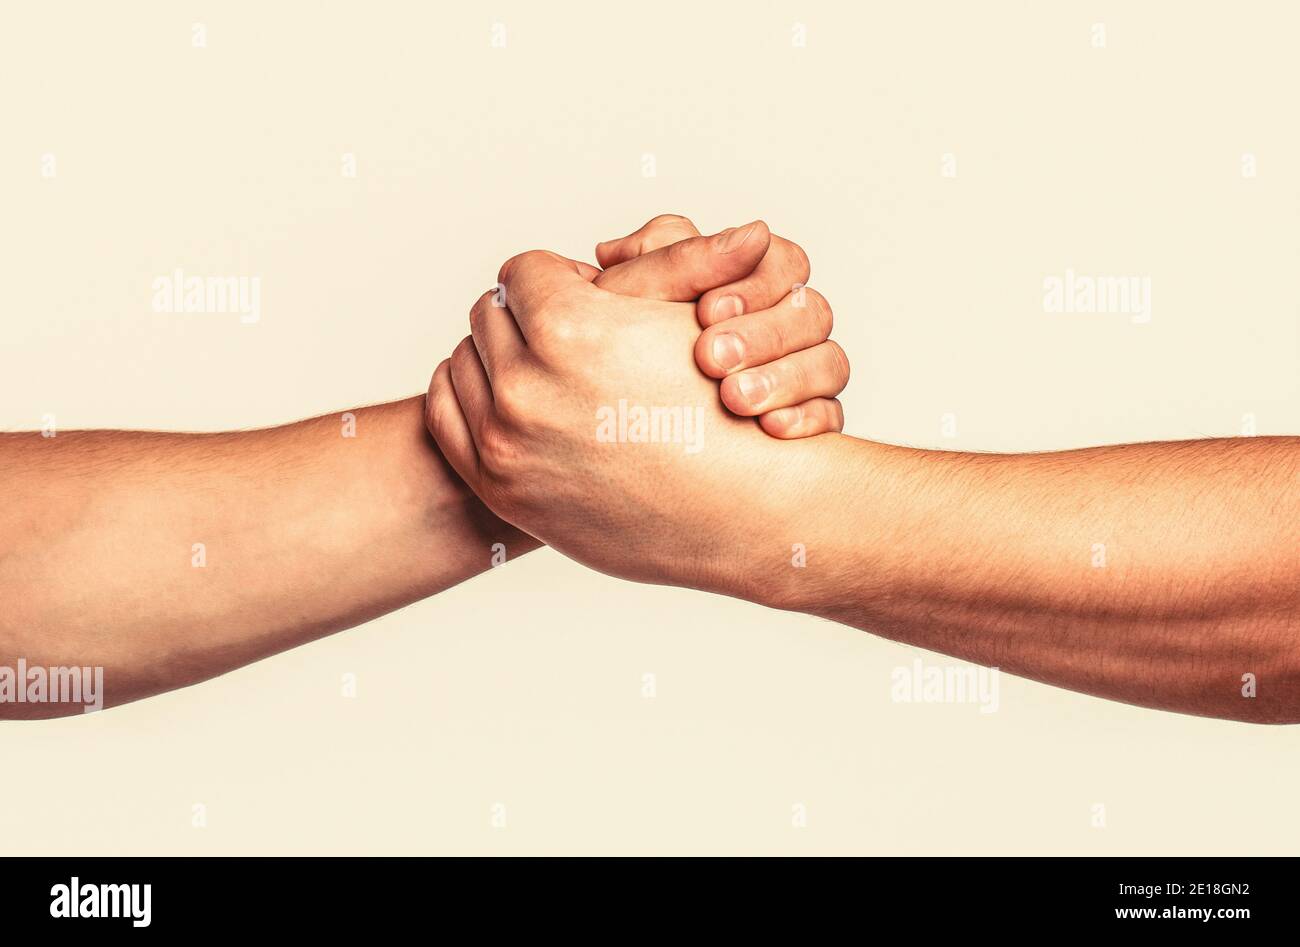 Helfende Hand ausgestreckt, isolierter Arm, Erlösung. Freundliche Handshake, Freundschaftsgrüße, Teamarbeit, Freundschaft. Rettung, helfende Geste oder Hände. Zwei Stockfoto